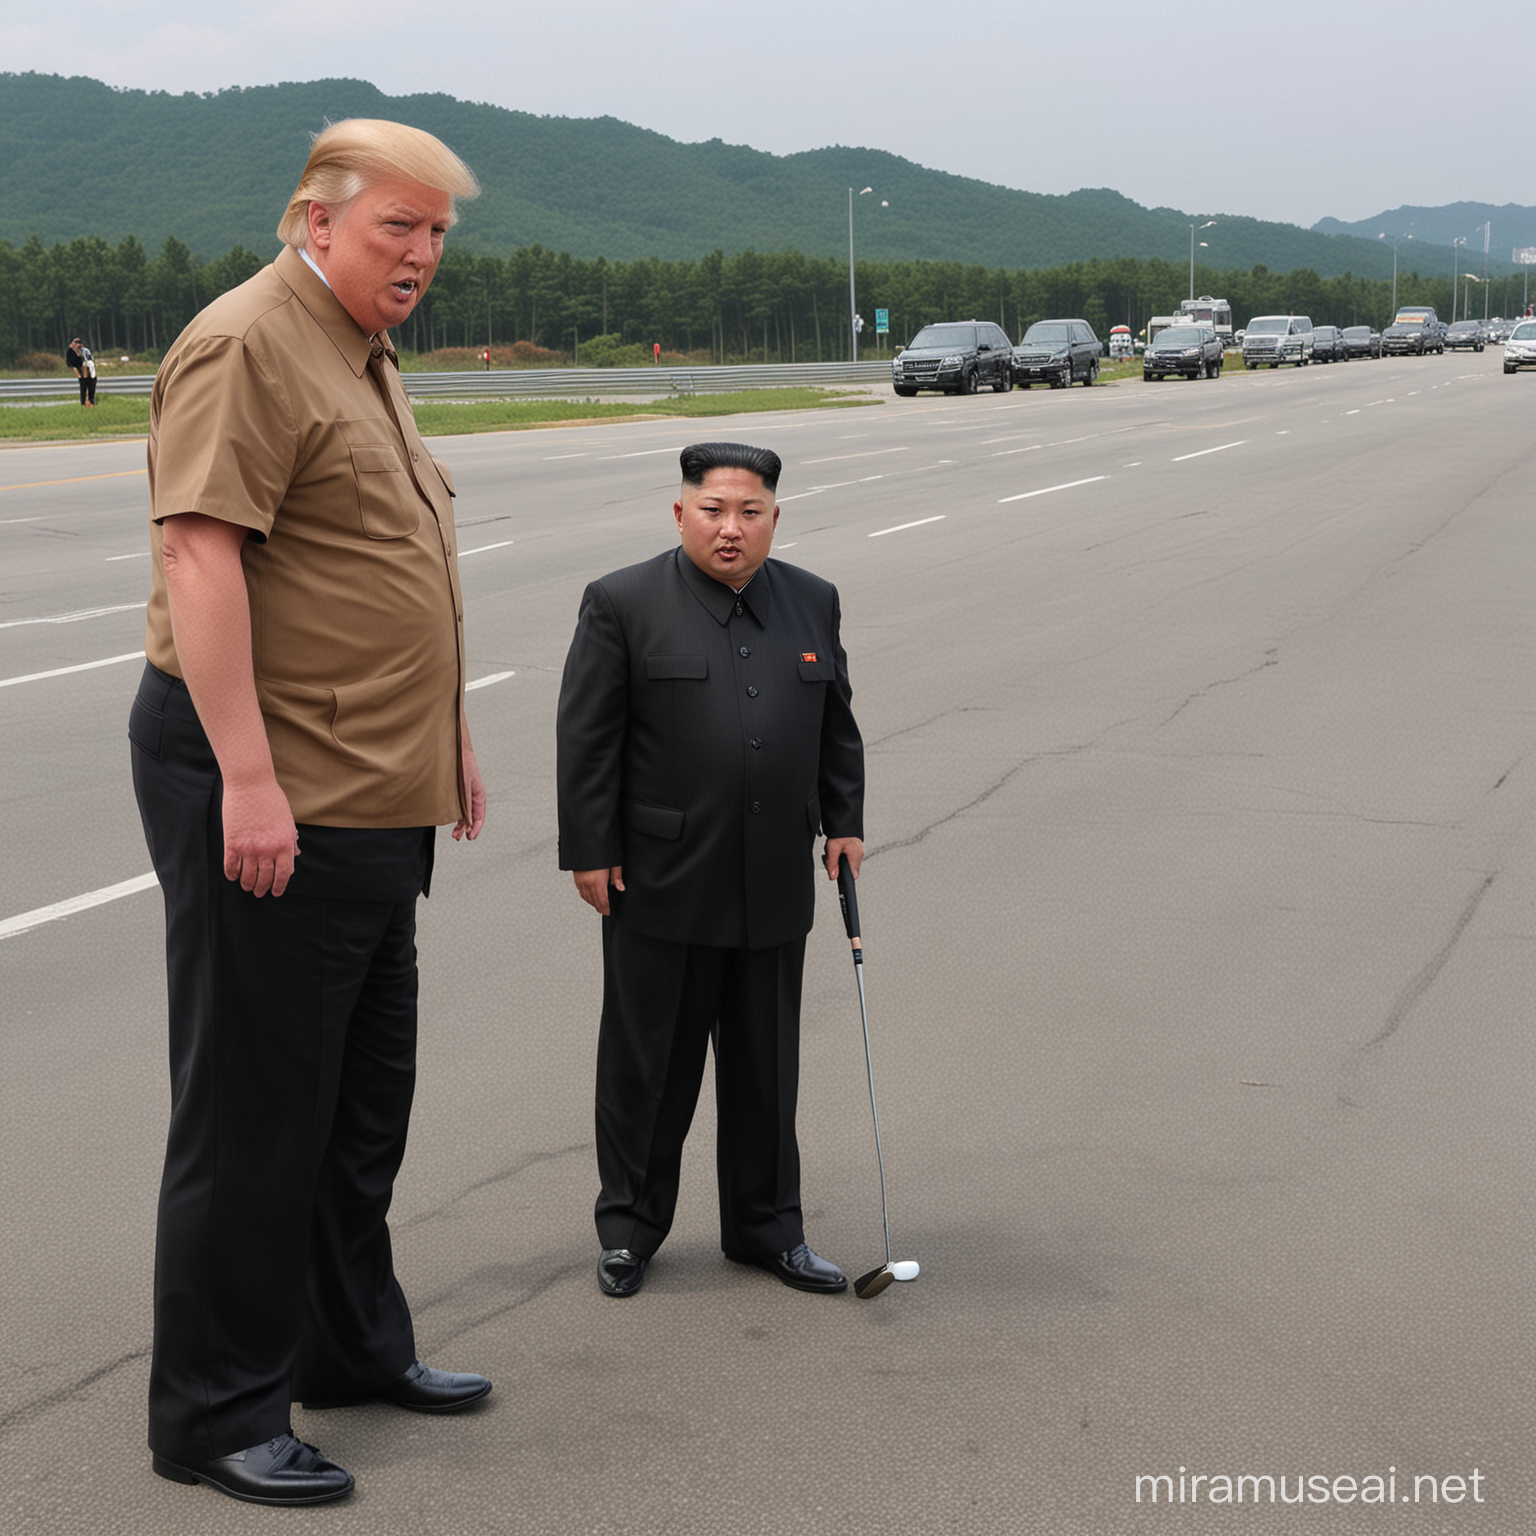 Kim Jong Un spielt Golf mit Donald Trump auf einer riesigen Kreuzung 